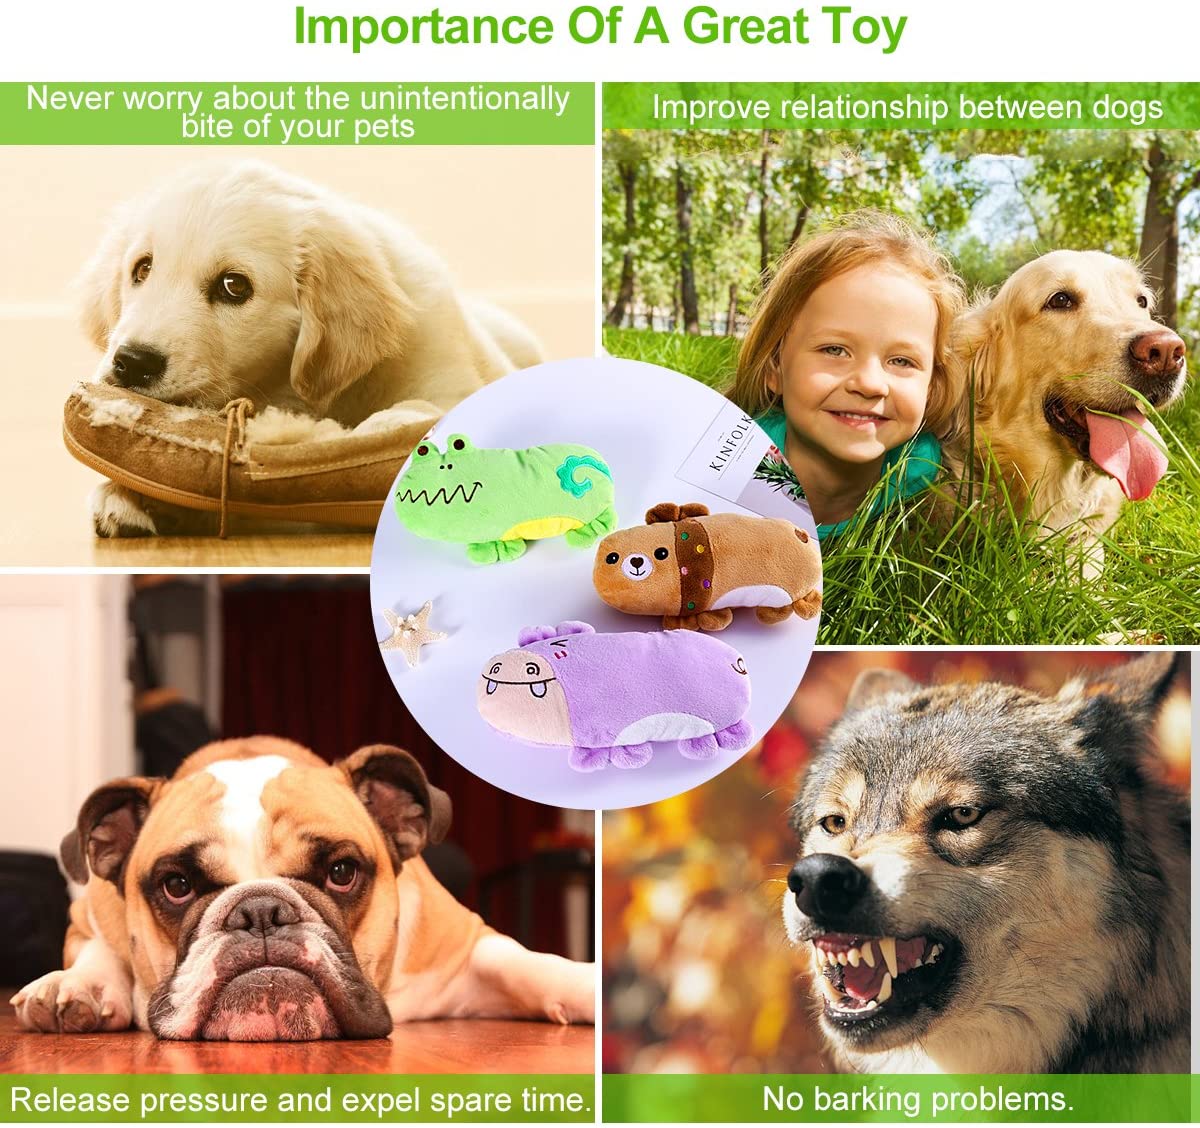  Ueetek - Kit de 3 juguetes masticables con sonido para perros: modelo de oso, hipopótamo y rana de peluche 